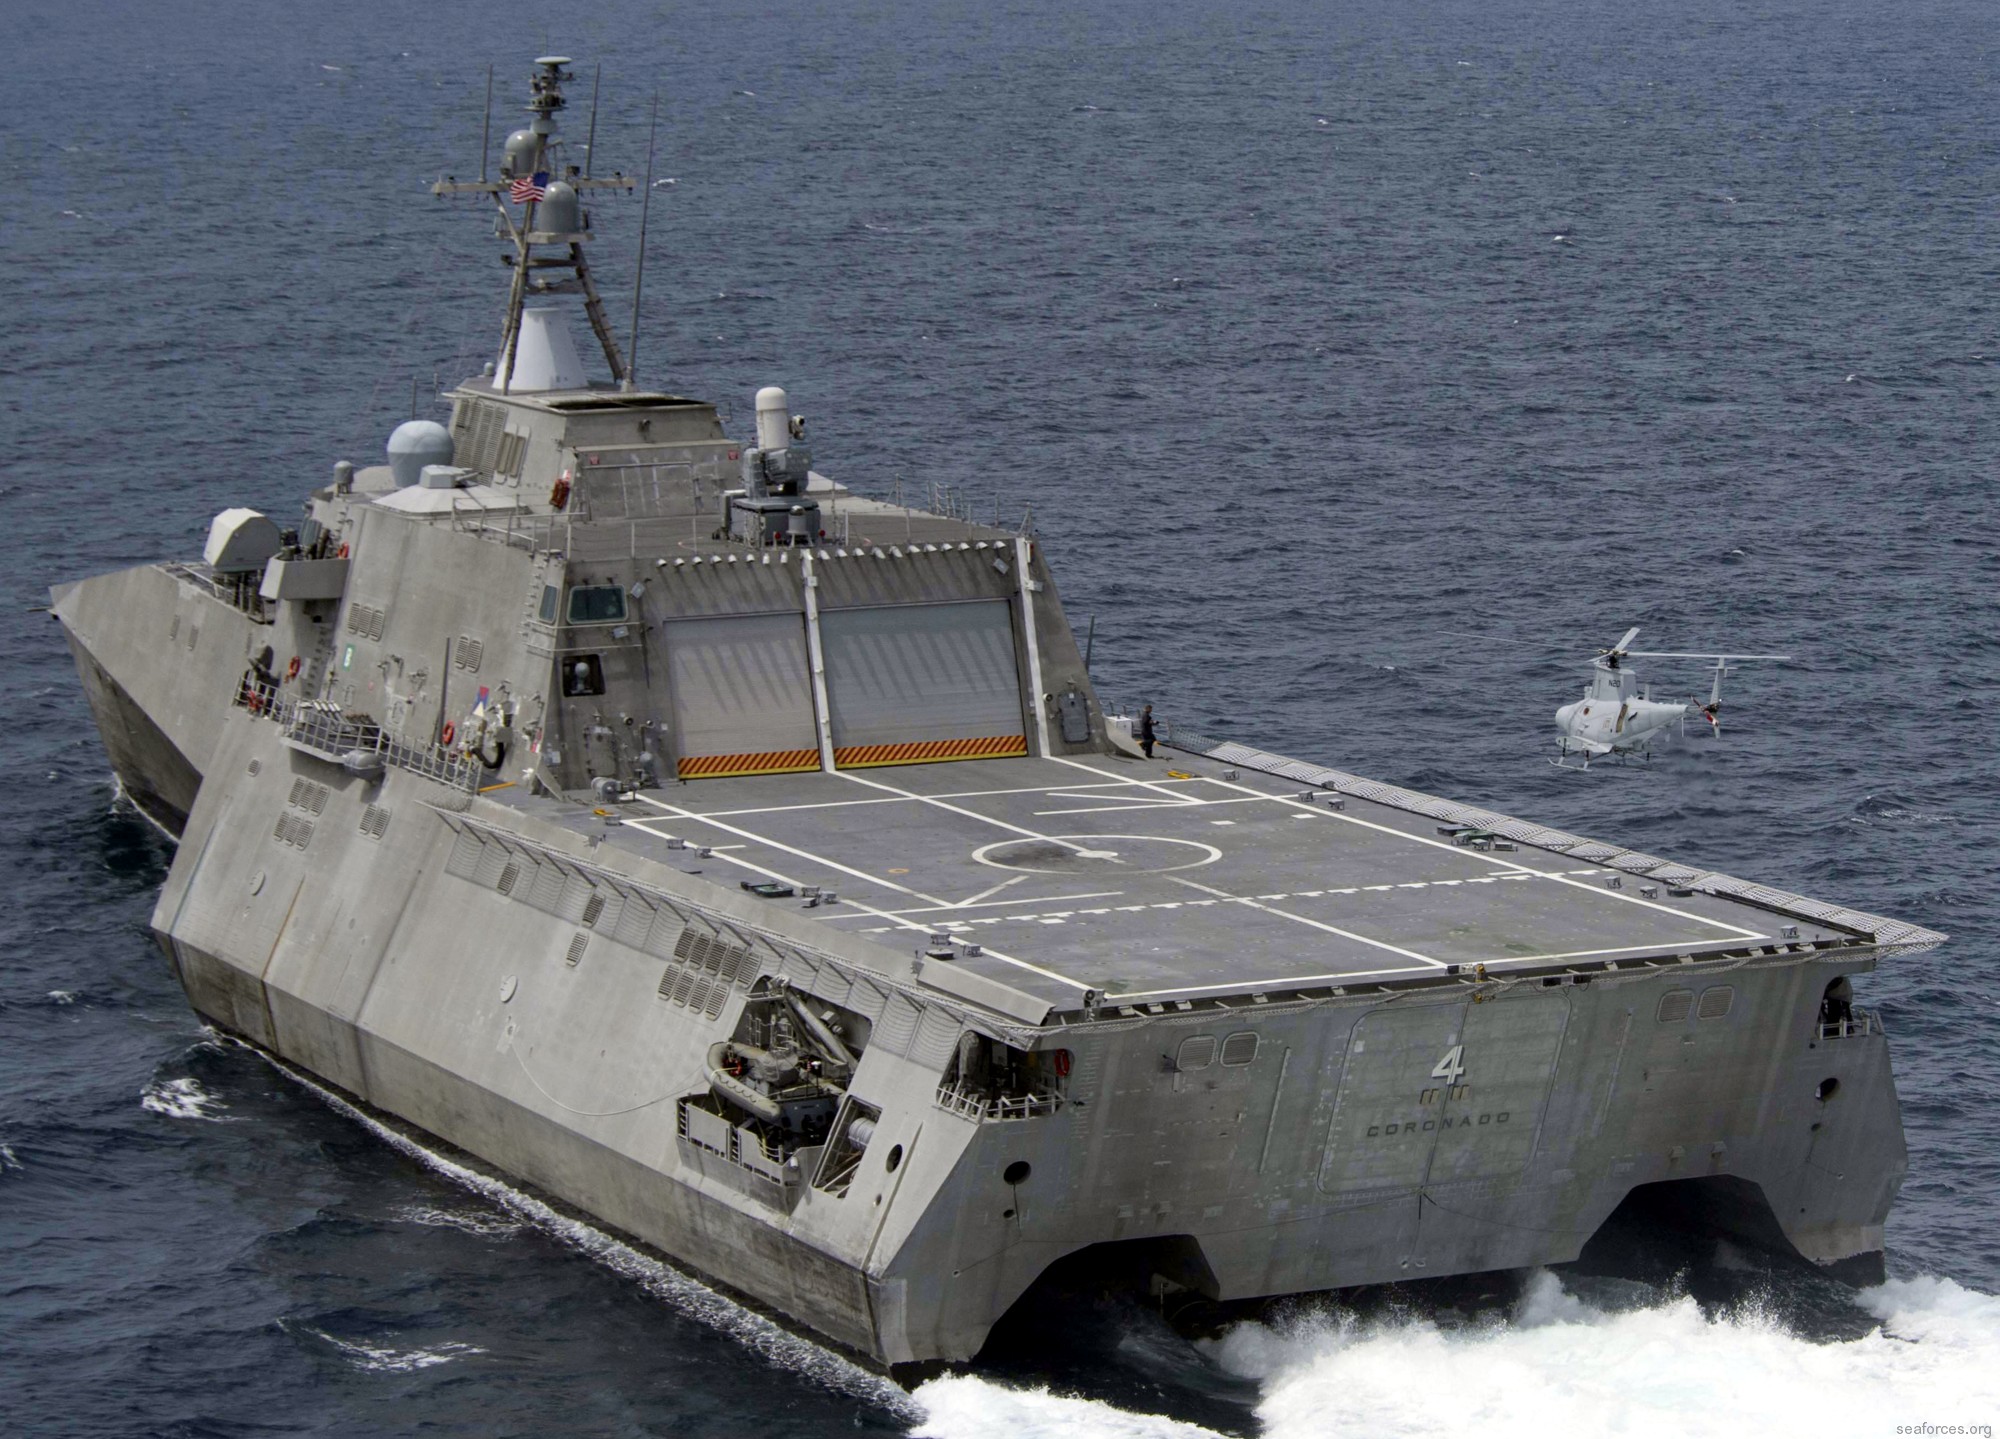 فئة الاستقلال السفينة القتالية الساحلية الأمريكية البحرية austal 06c